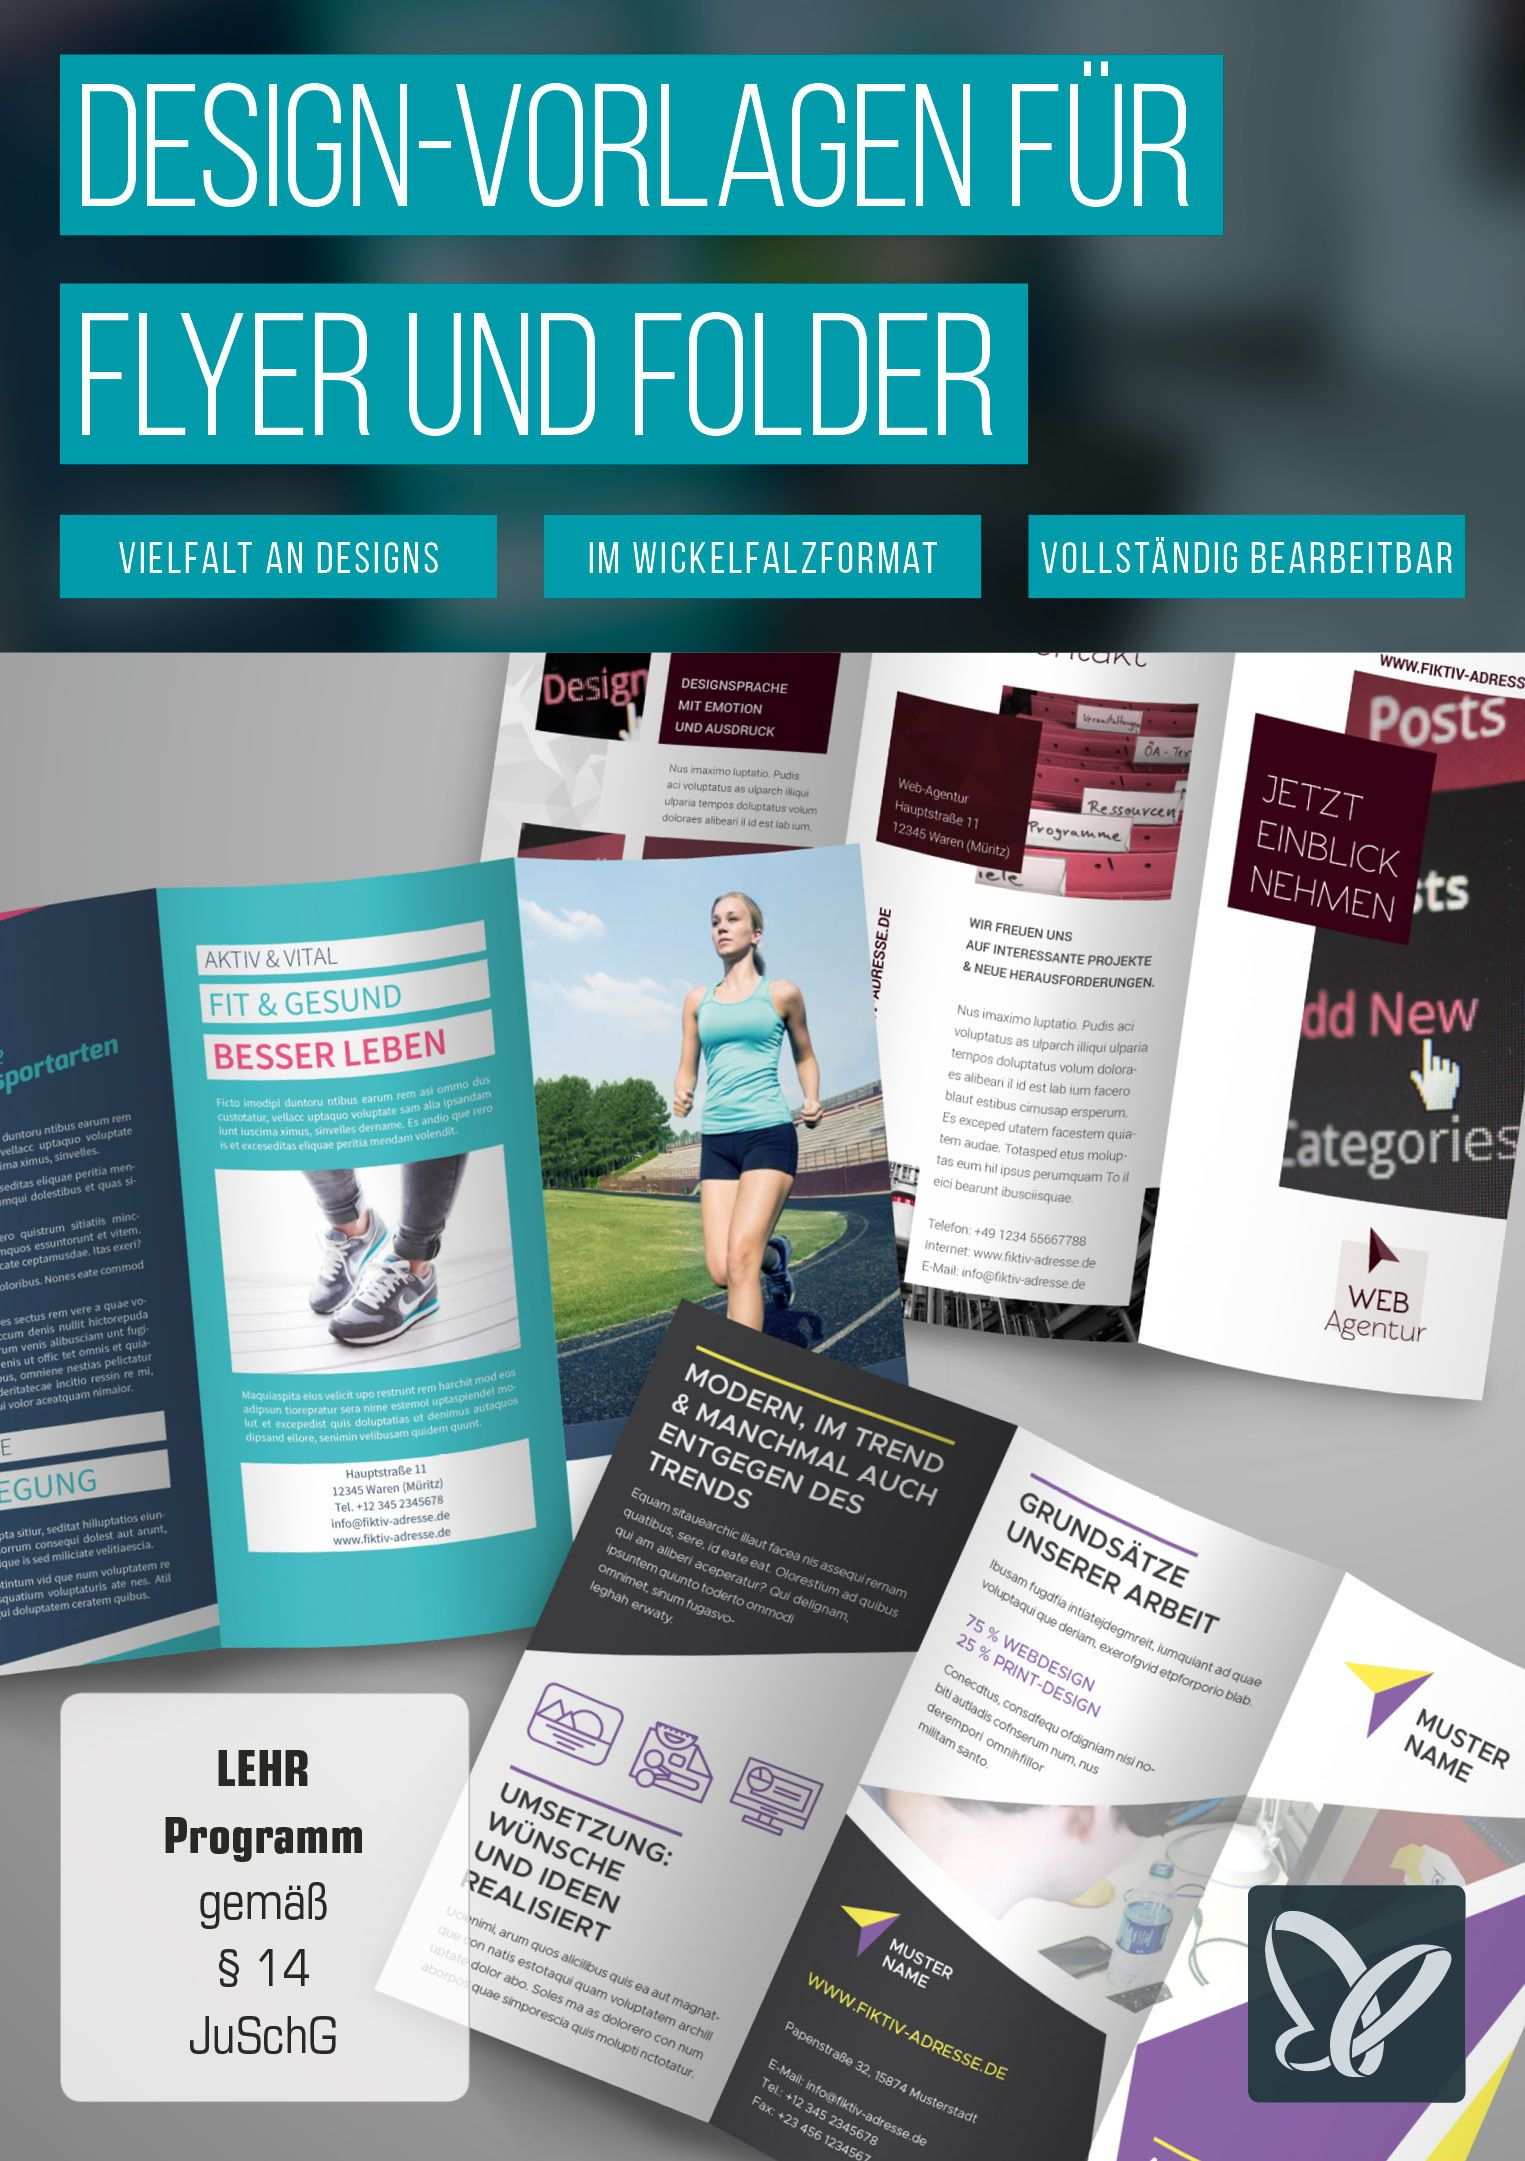 Flyer Und Folder Gestalten Fertige Design Vorlagen Herunterladen Flyer Gestalten Flyer Vorlagen Fur Flyer